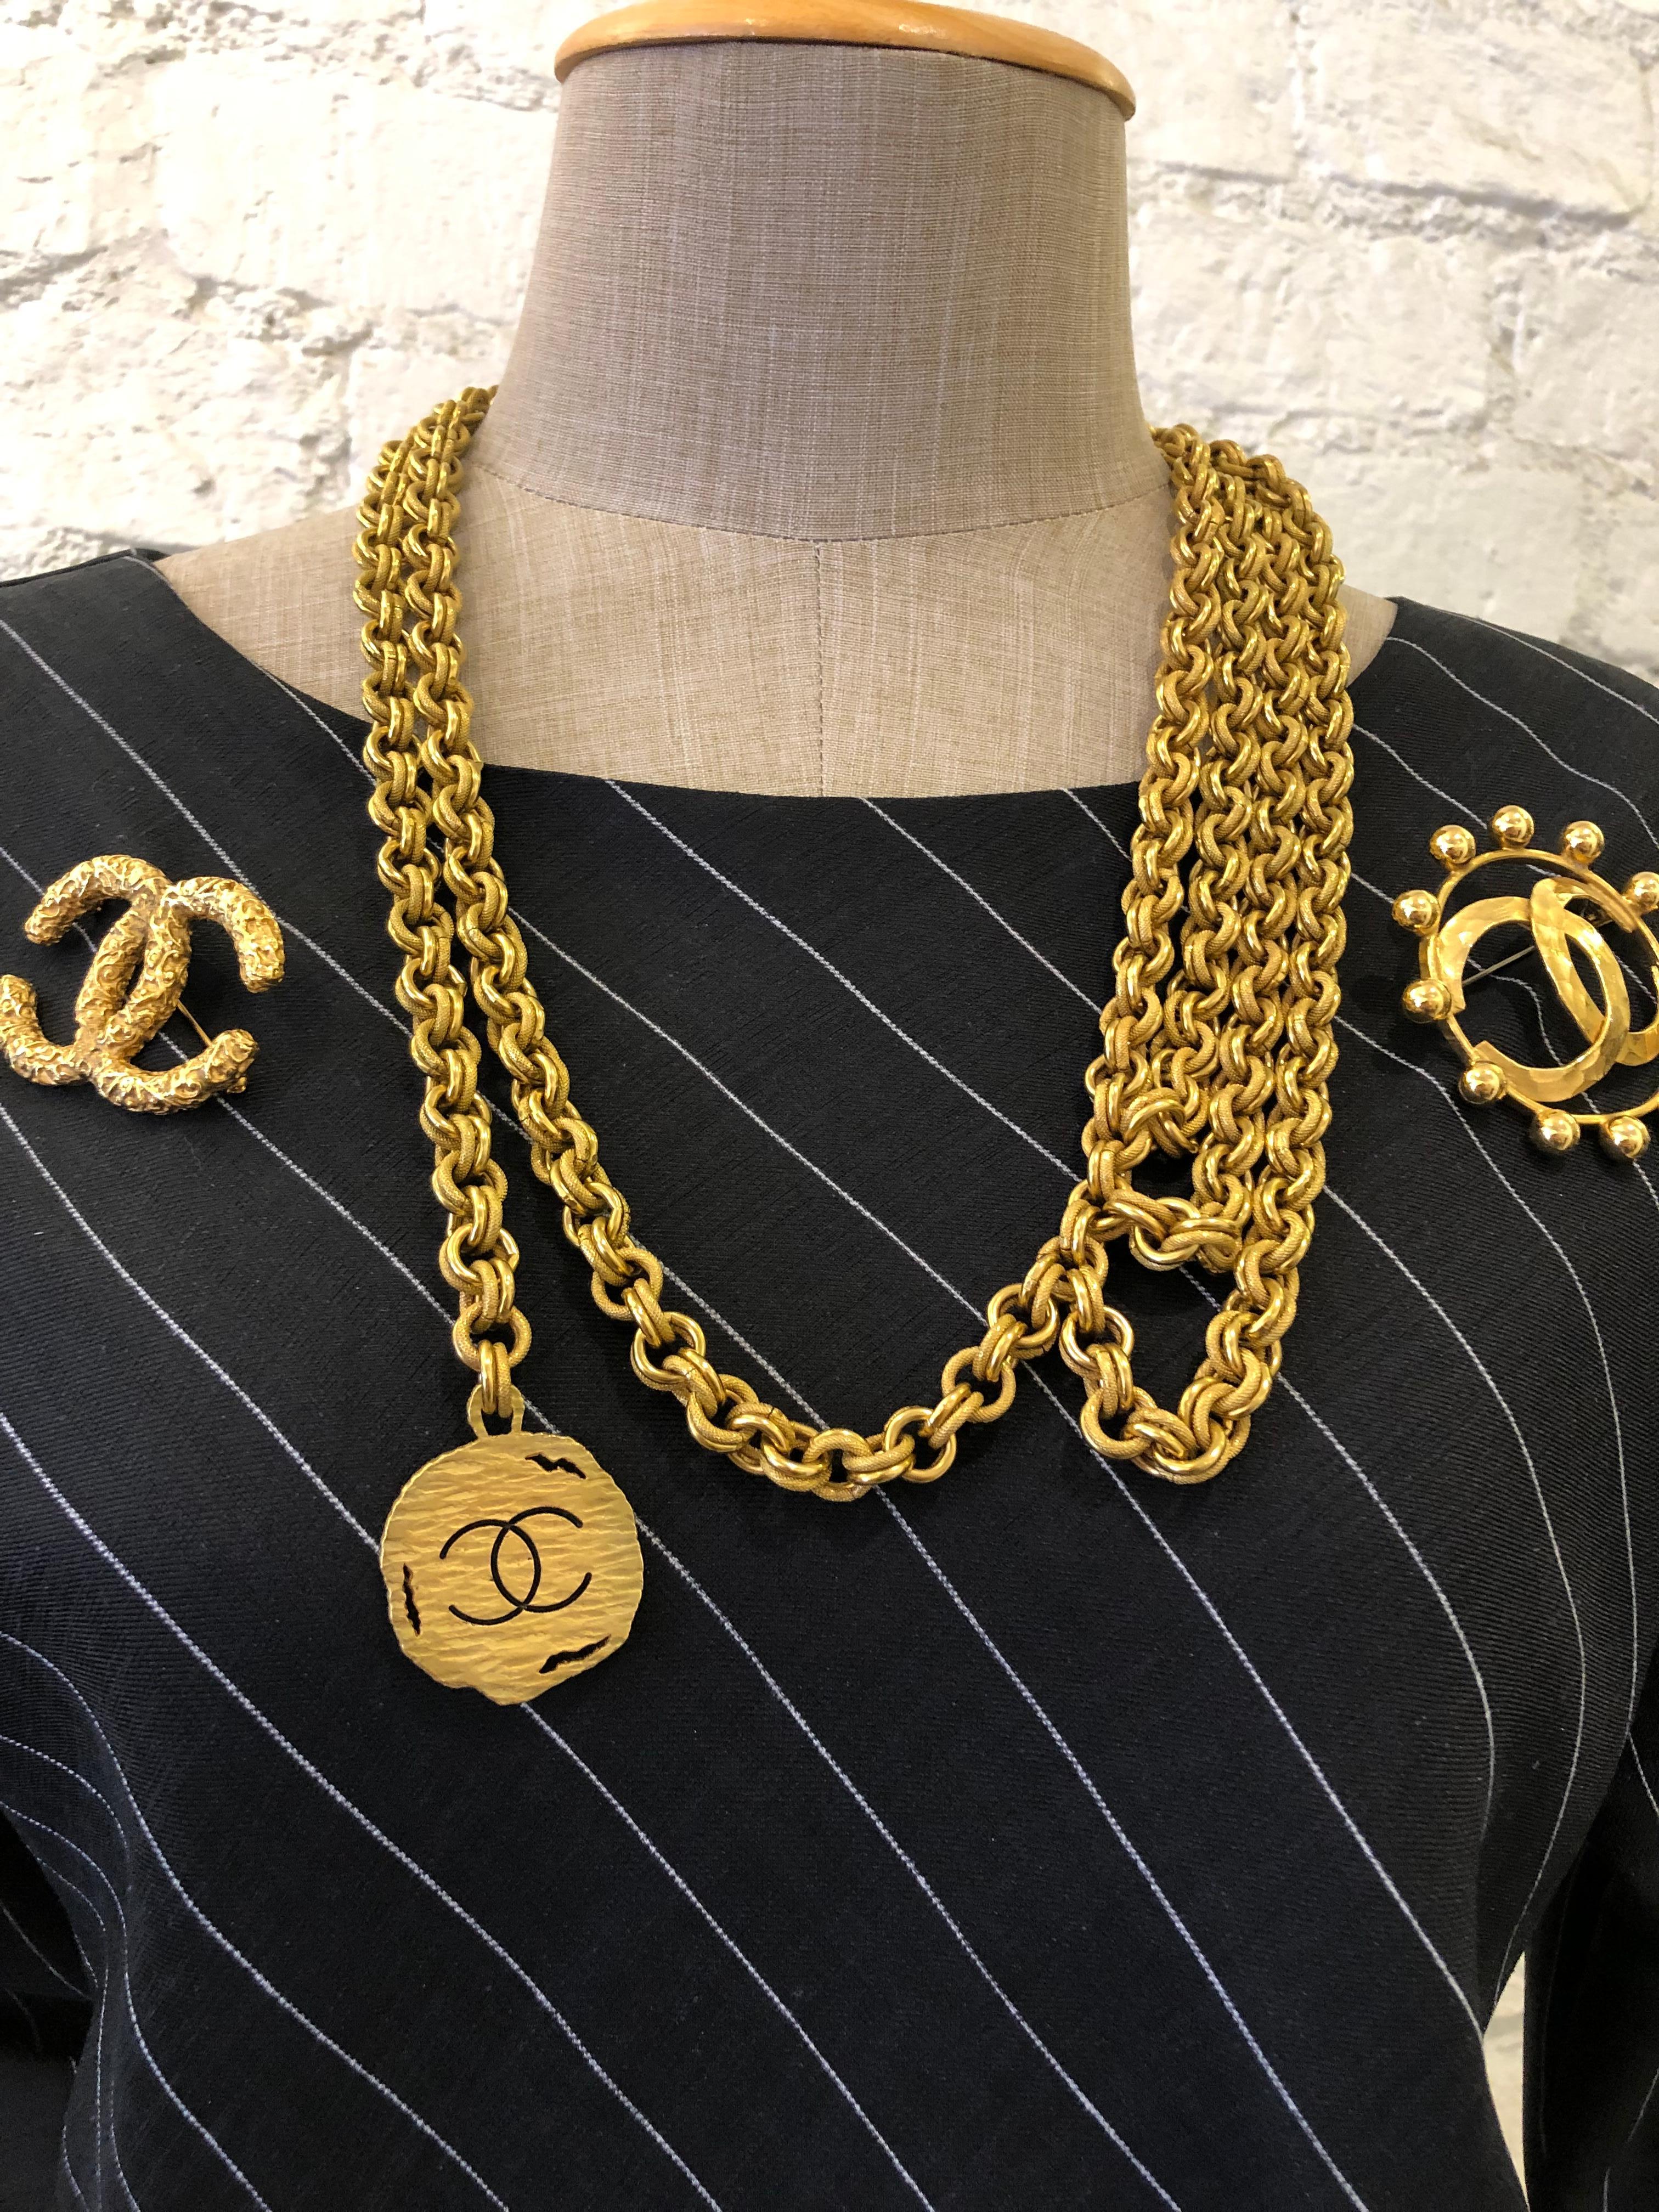 1994 Vintage CHANEL Gold Toned Quadruple Chain Belt Necklace For Sale 2